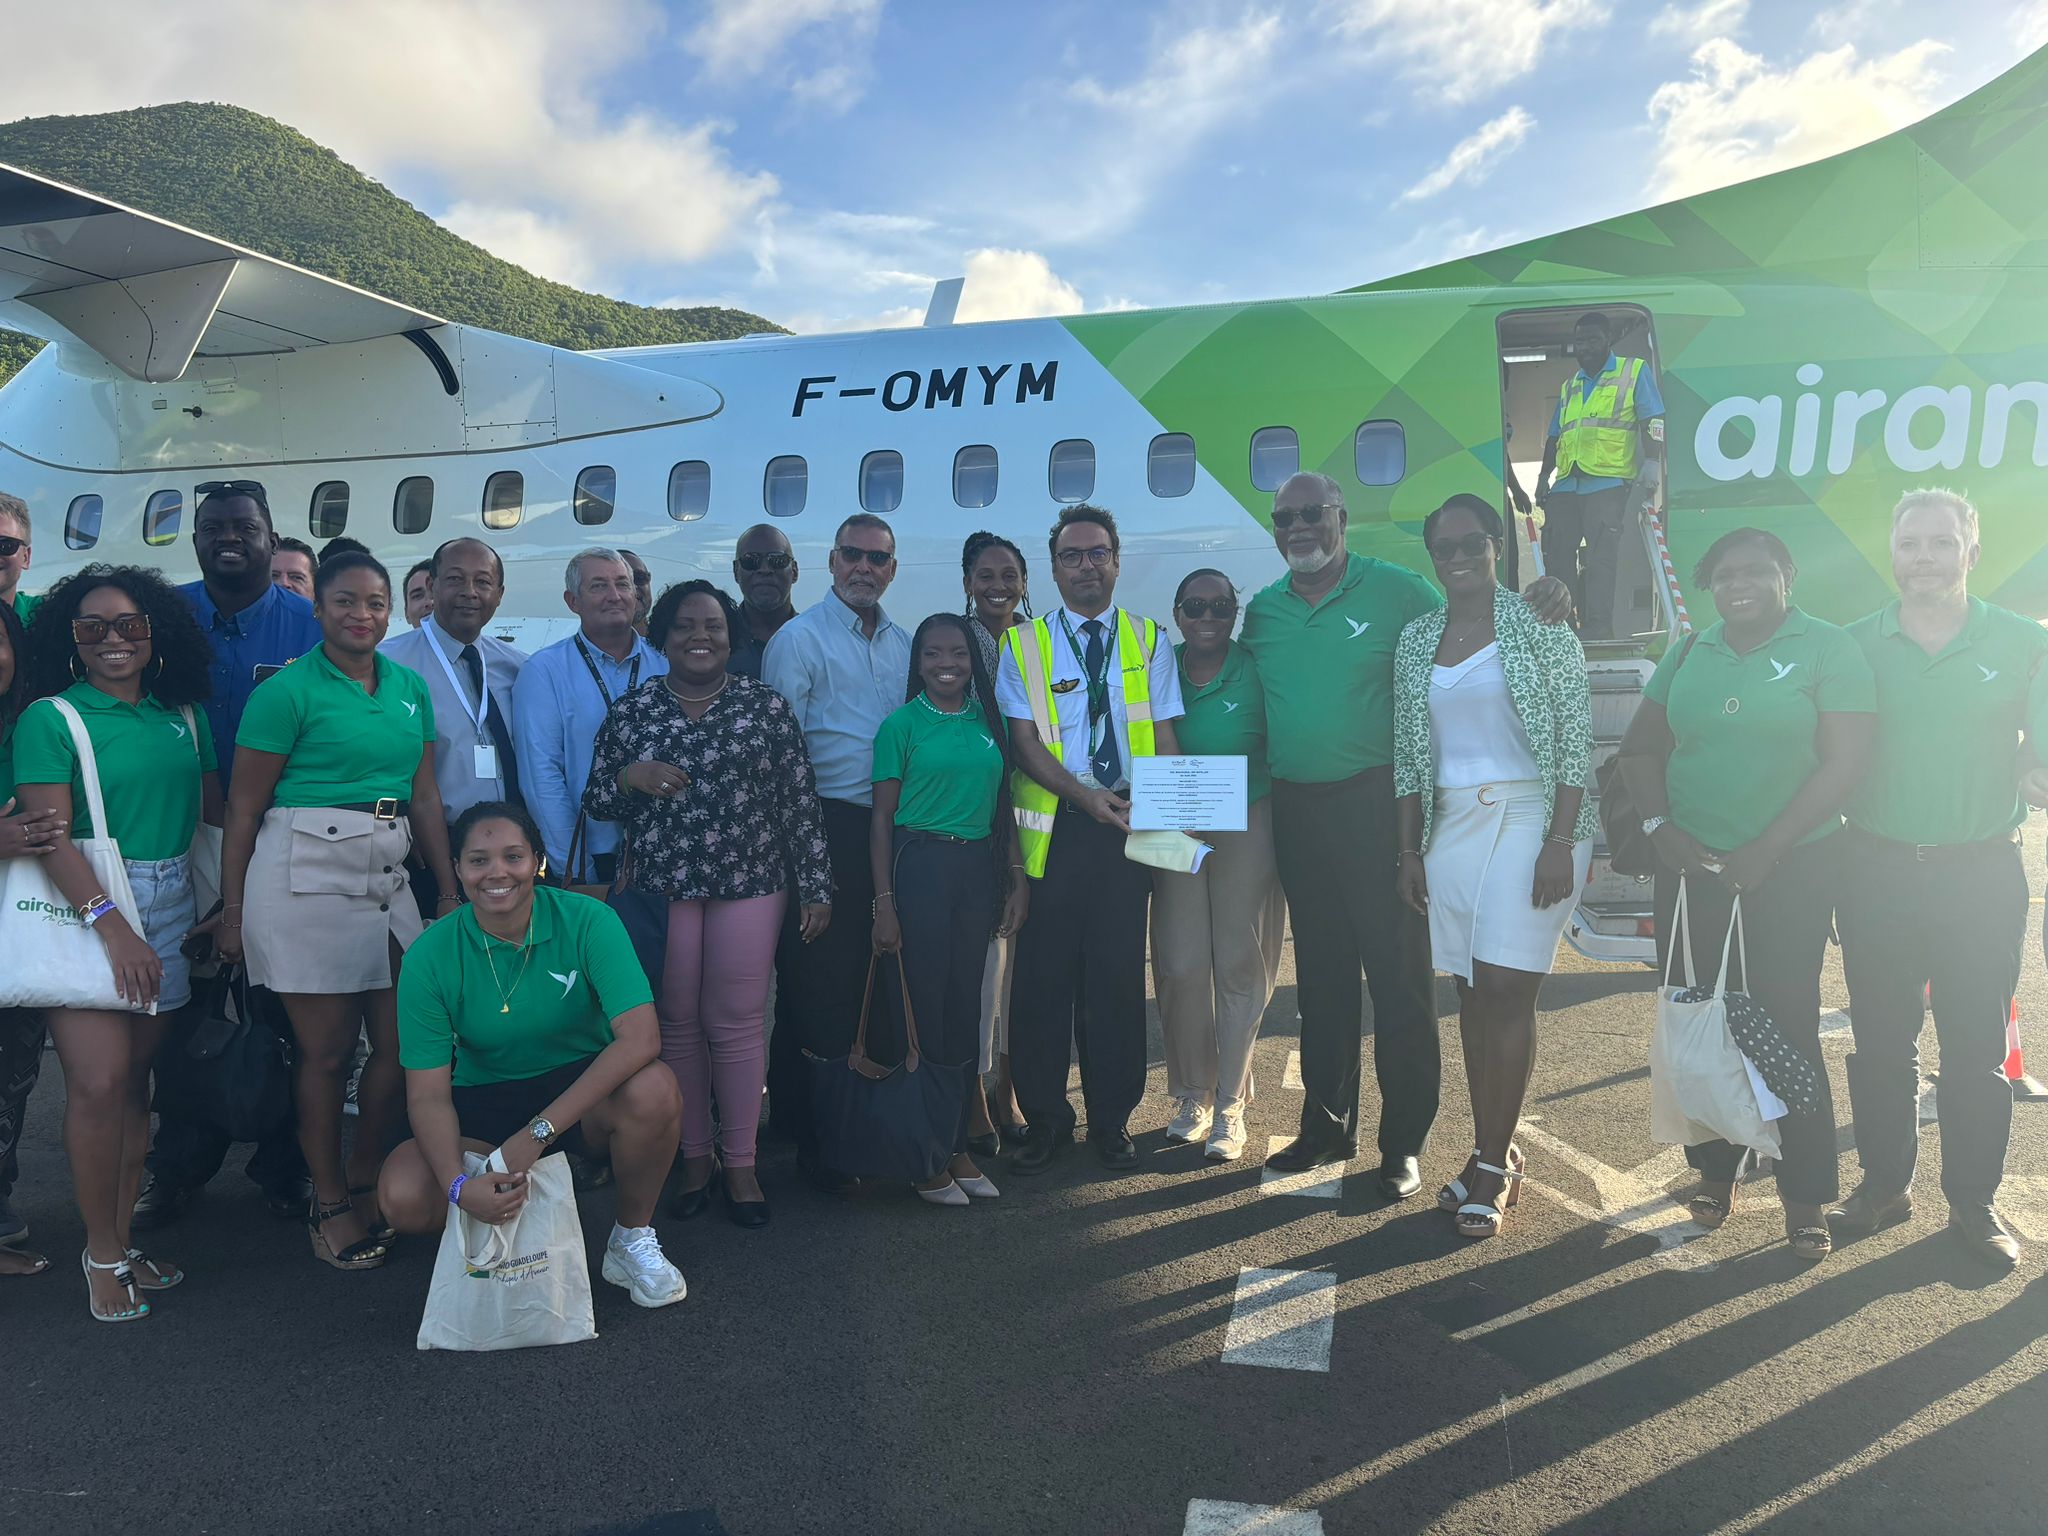     Air Antilles organise un vol inaugural à destination de Saint-Martin

